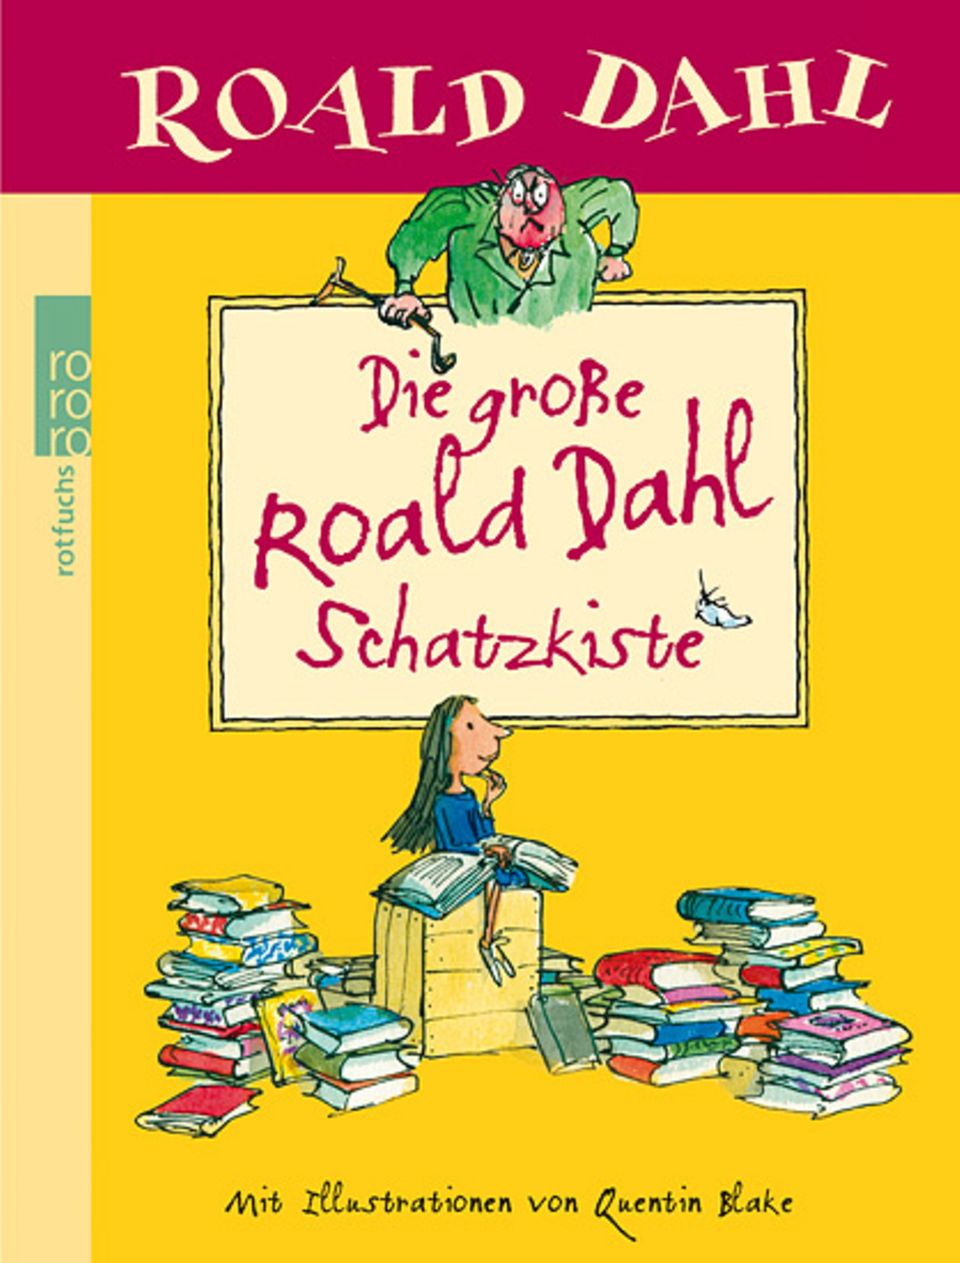 Buchtipp: In der "großen Roald Dahl Schatzkiste" stecken die Geschichten von Willy Wonka, Mr. Fox und all den anderen liebenswert verschrobenen Gestalten